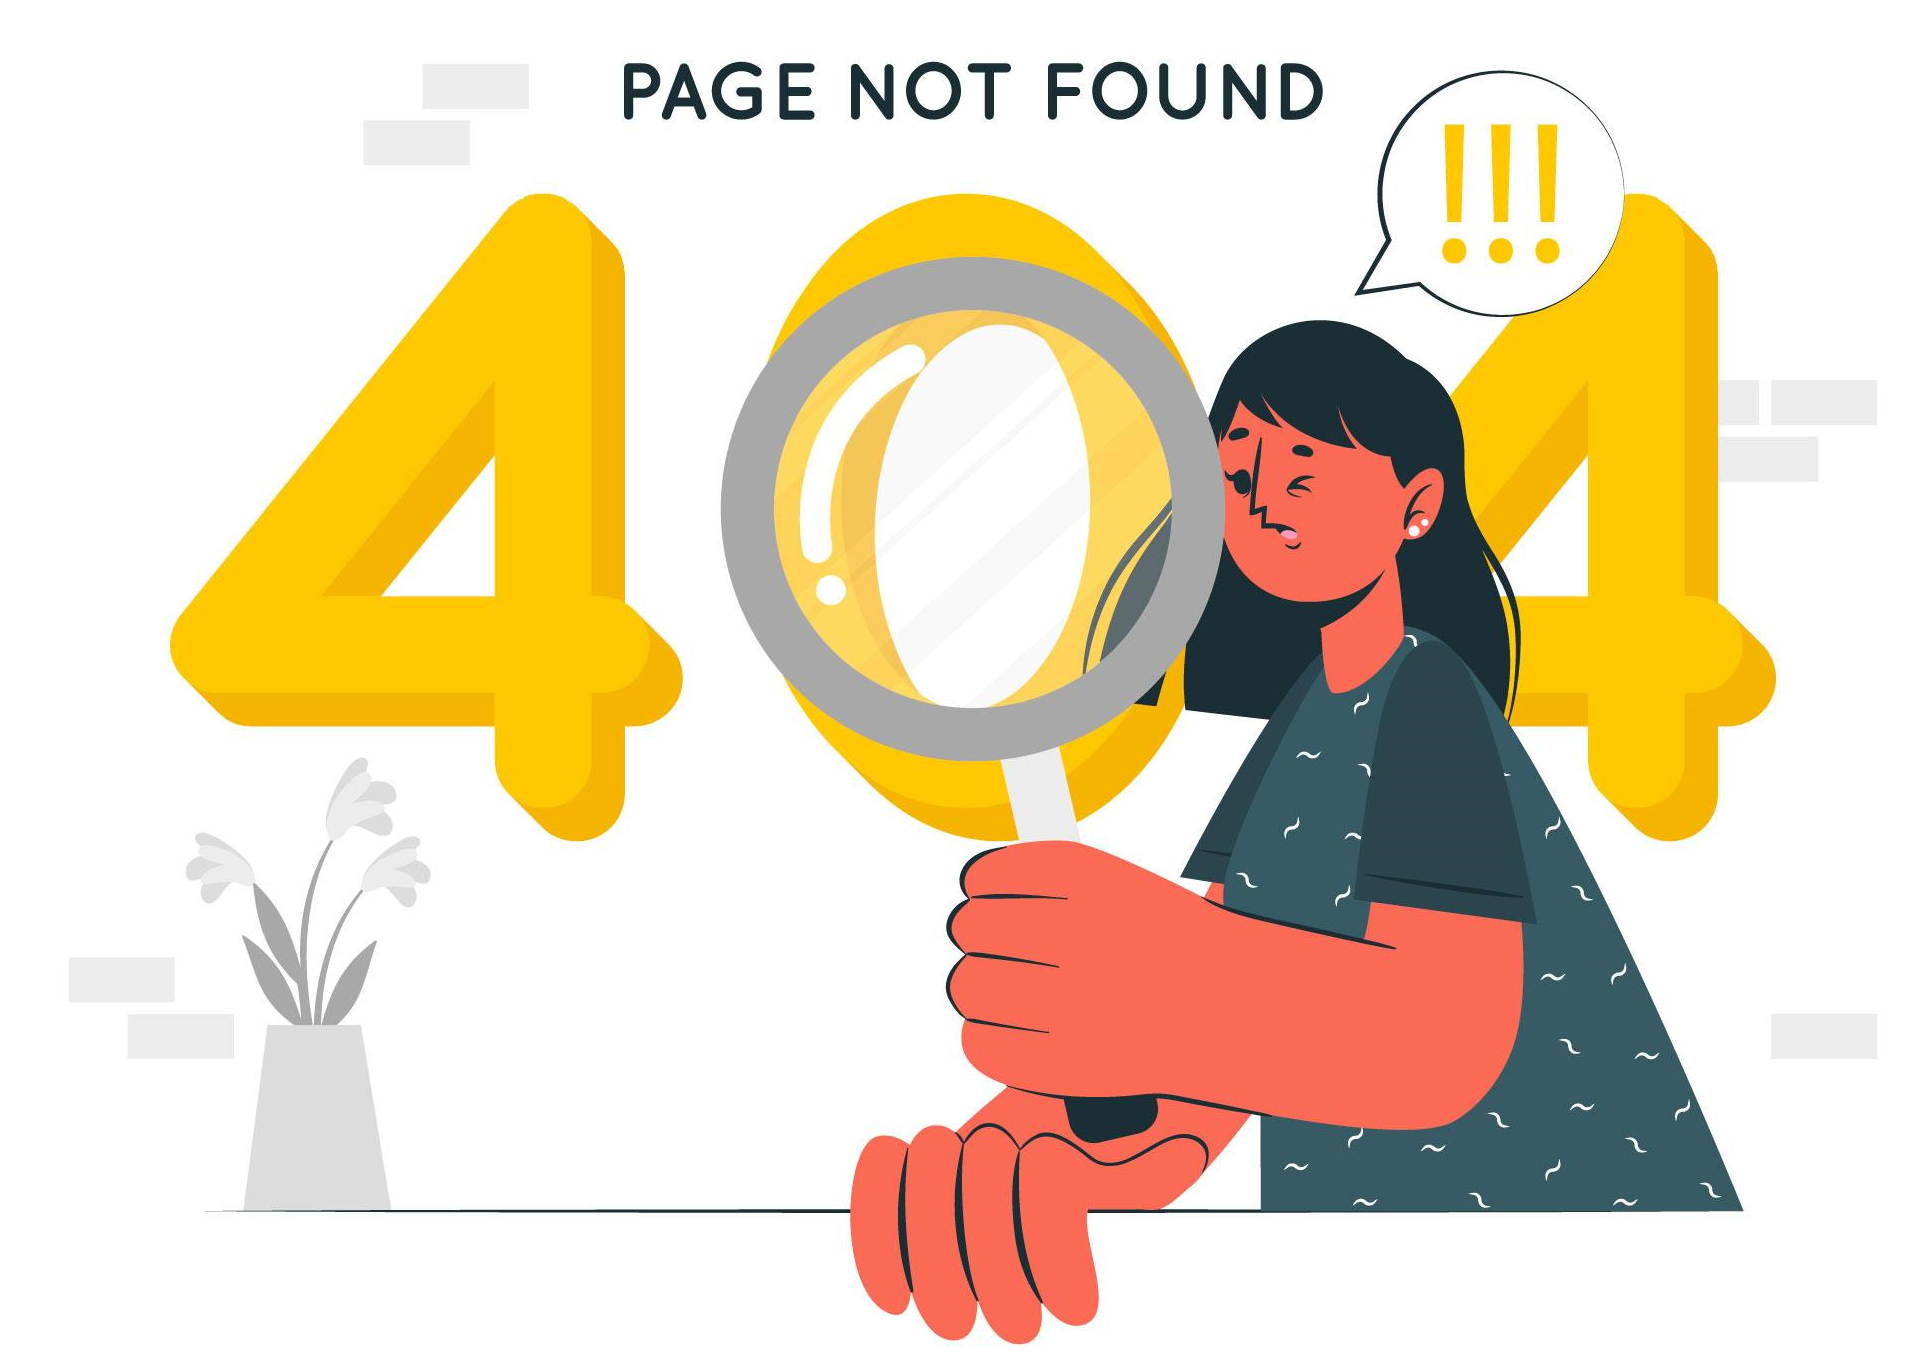 404-error